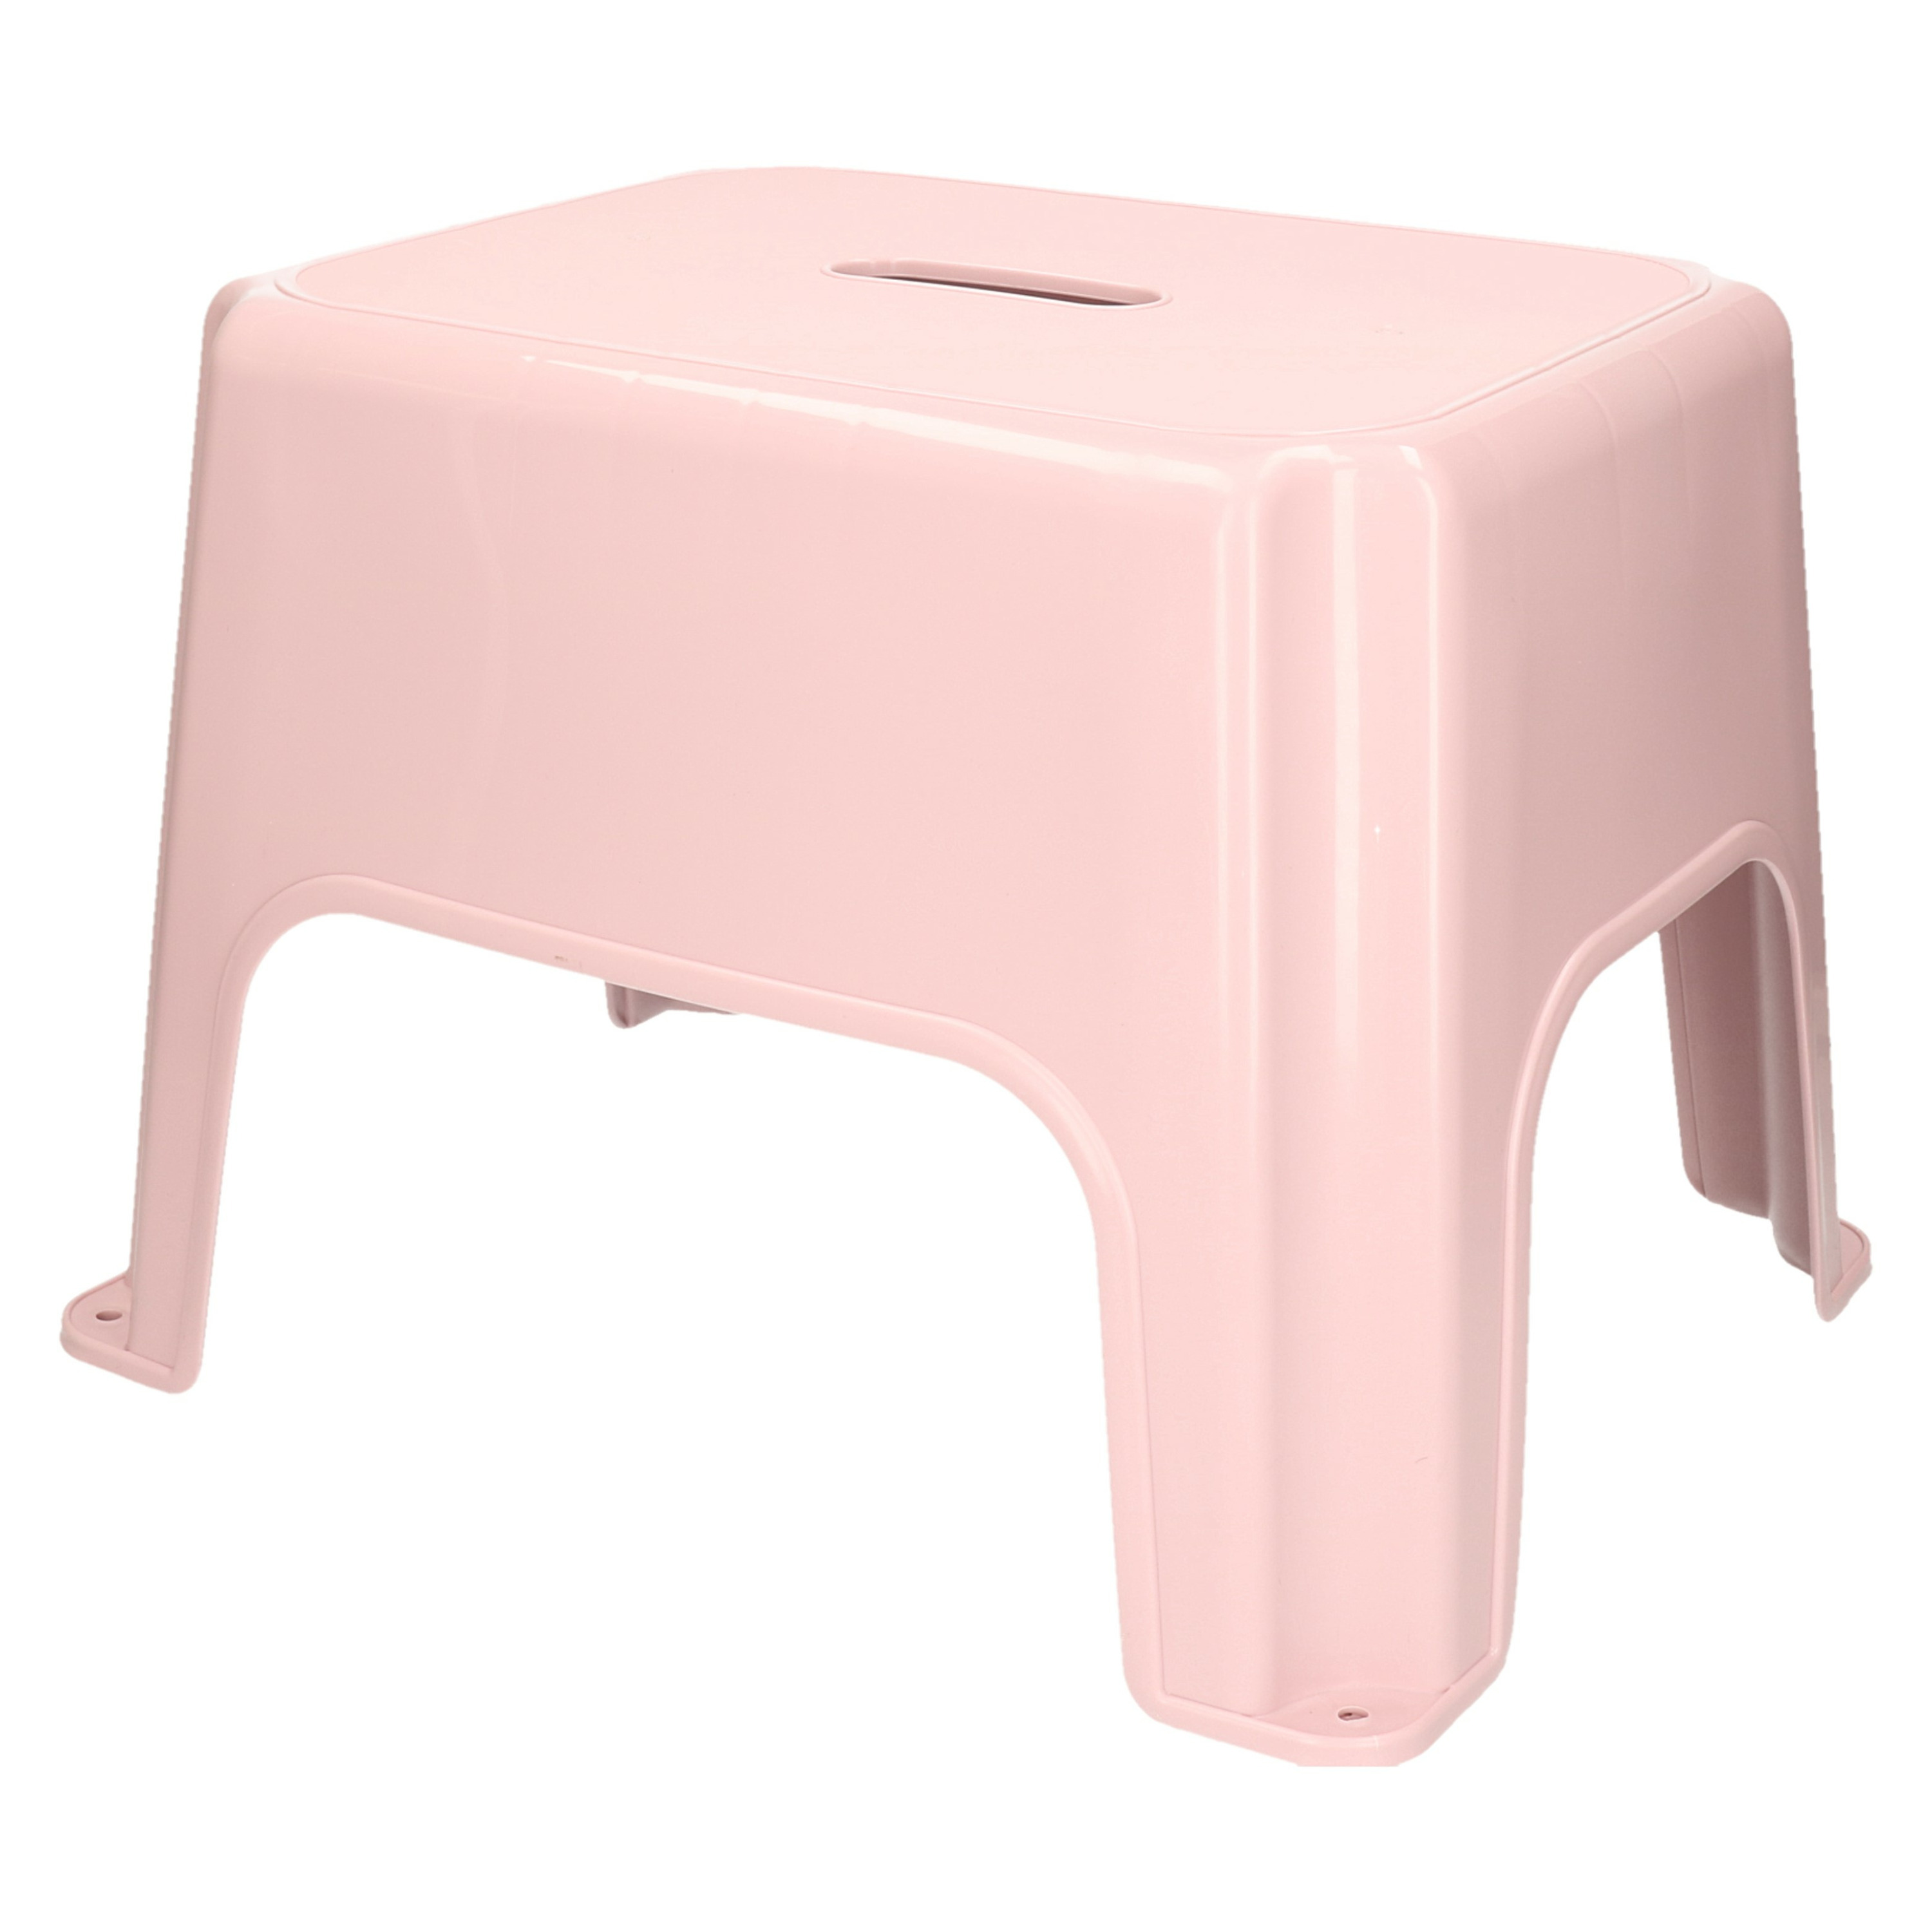 Keukenkrukje-opstapje Handy Step roze kunststof 40 x 30 x 28 cm